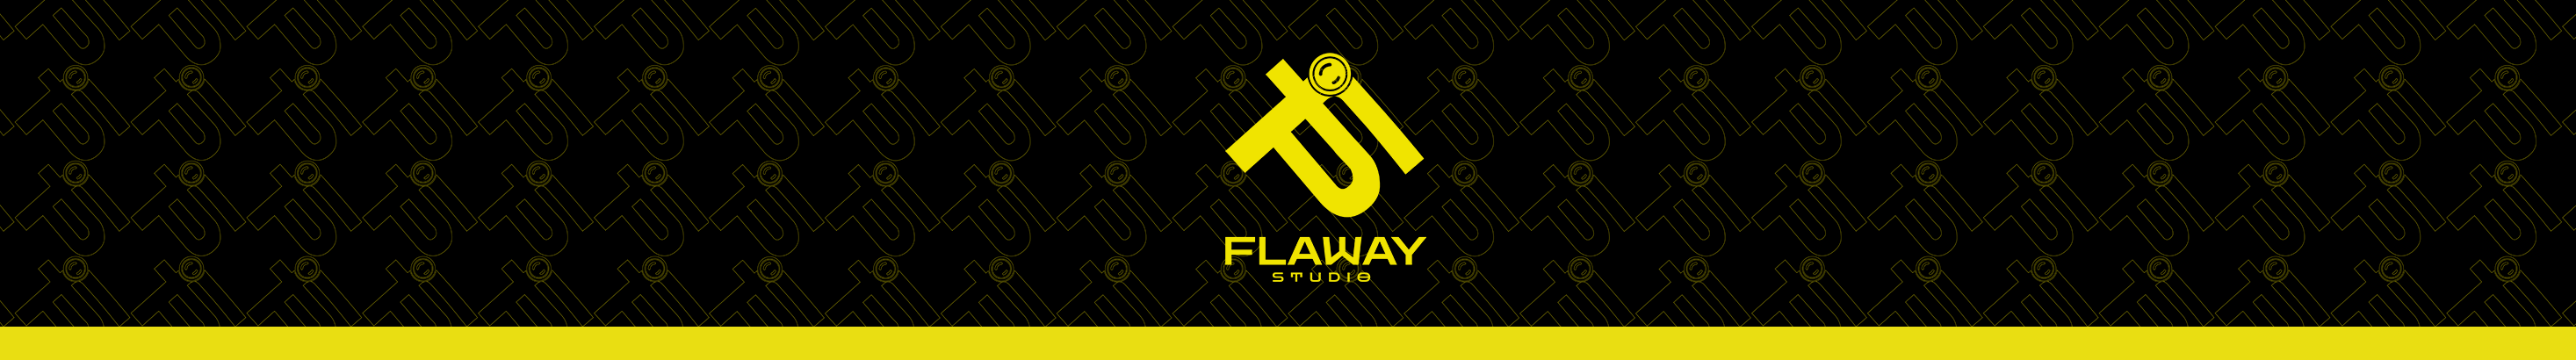 Flaway Studio's profile banner